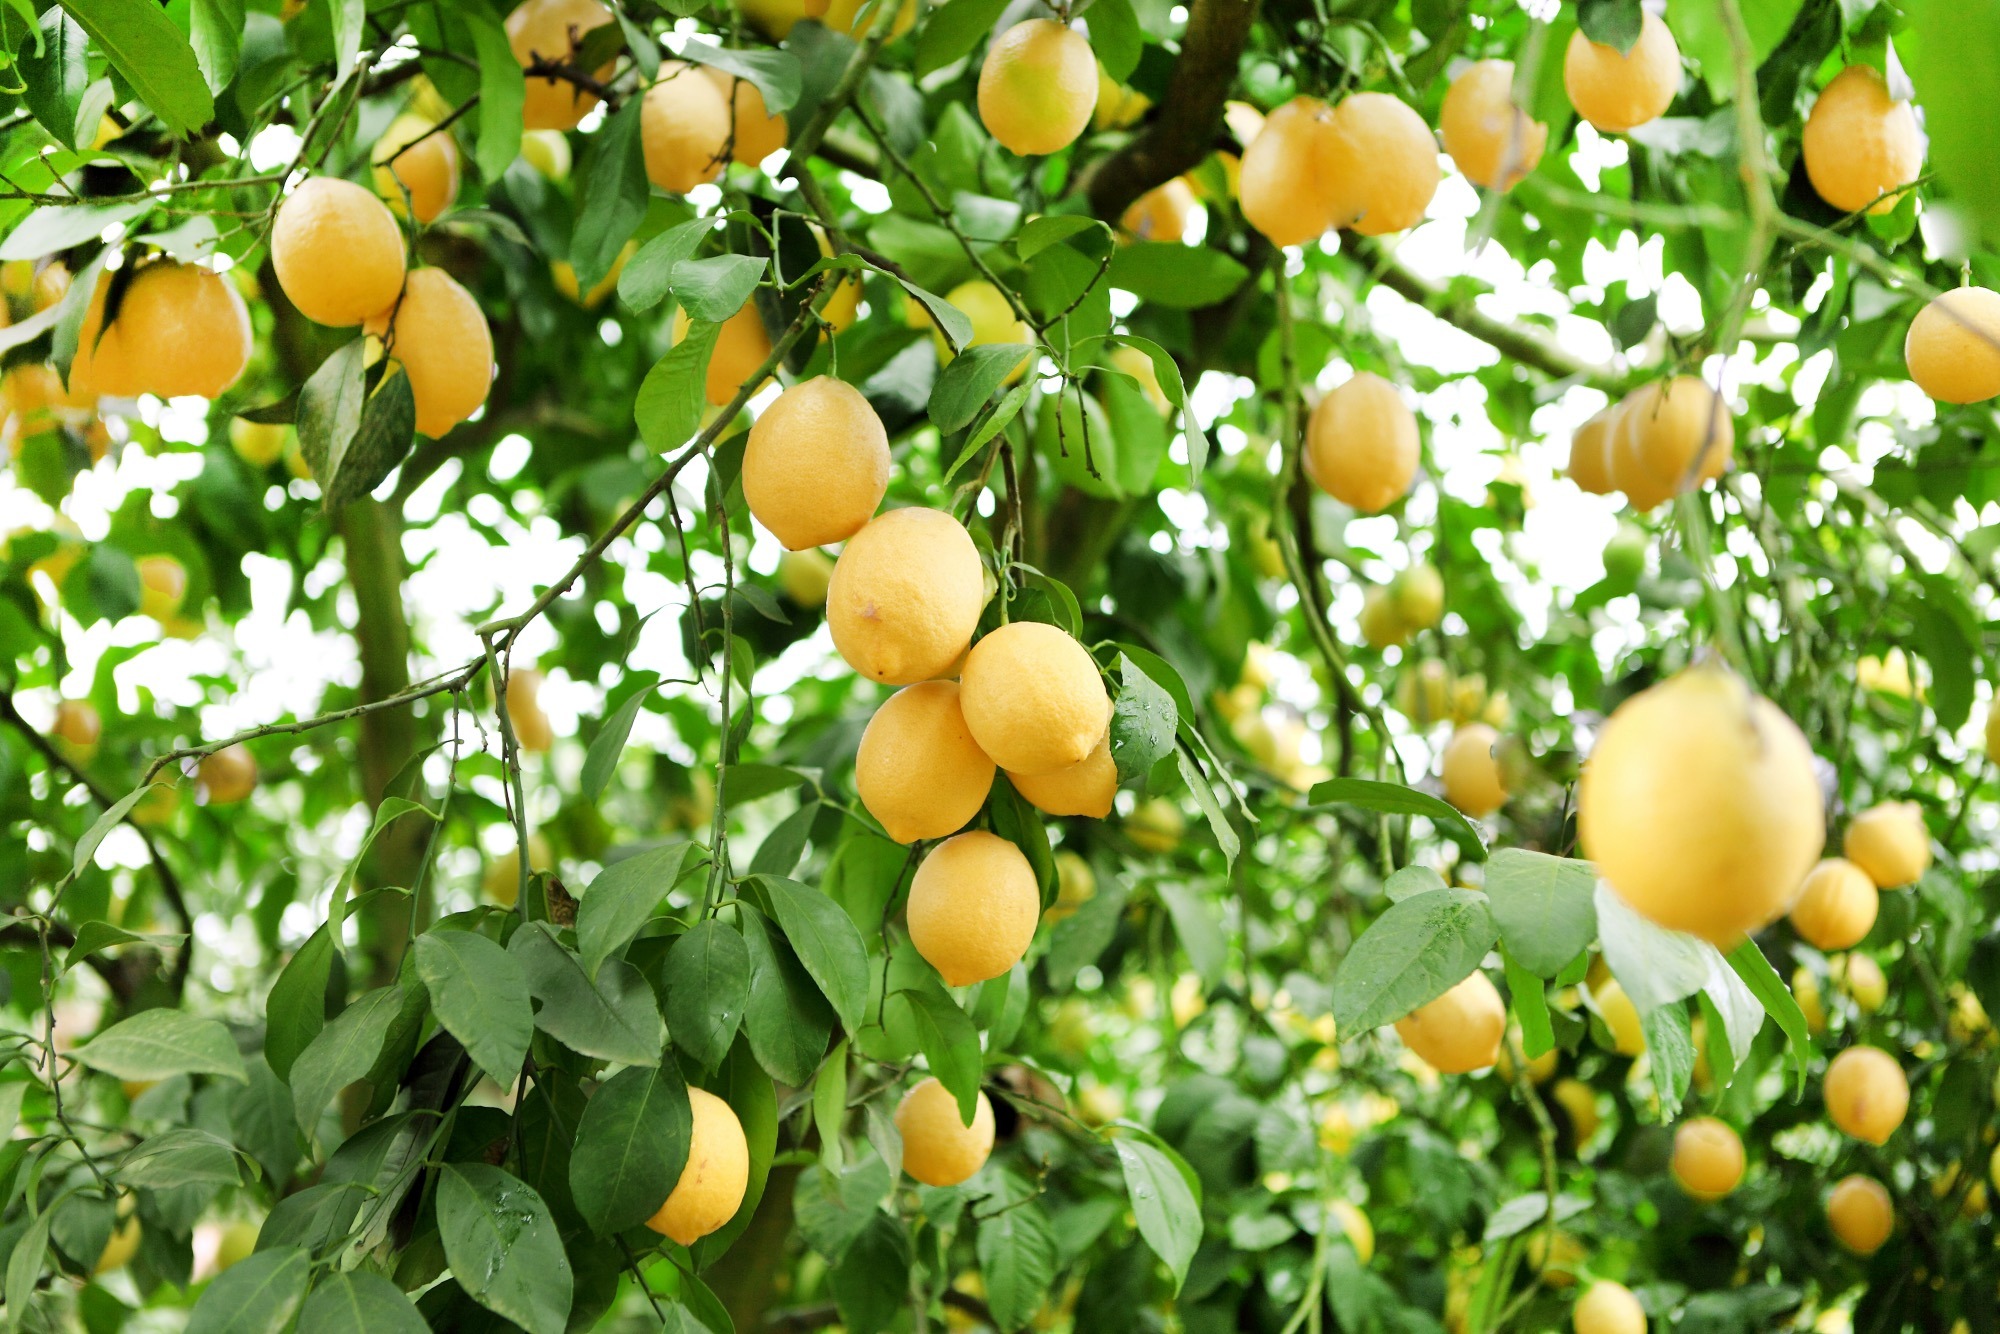 四川安岳县,世界柠檬发展大会的举办地,被誉为中国柠檬之乡